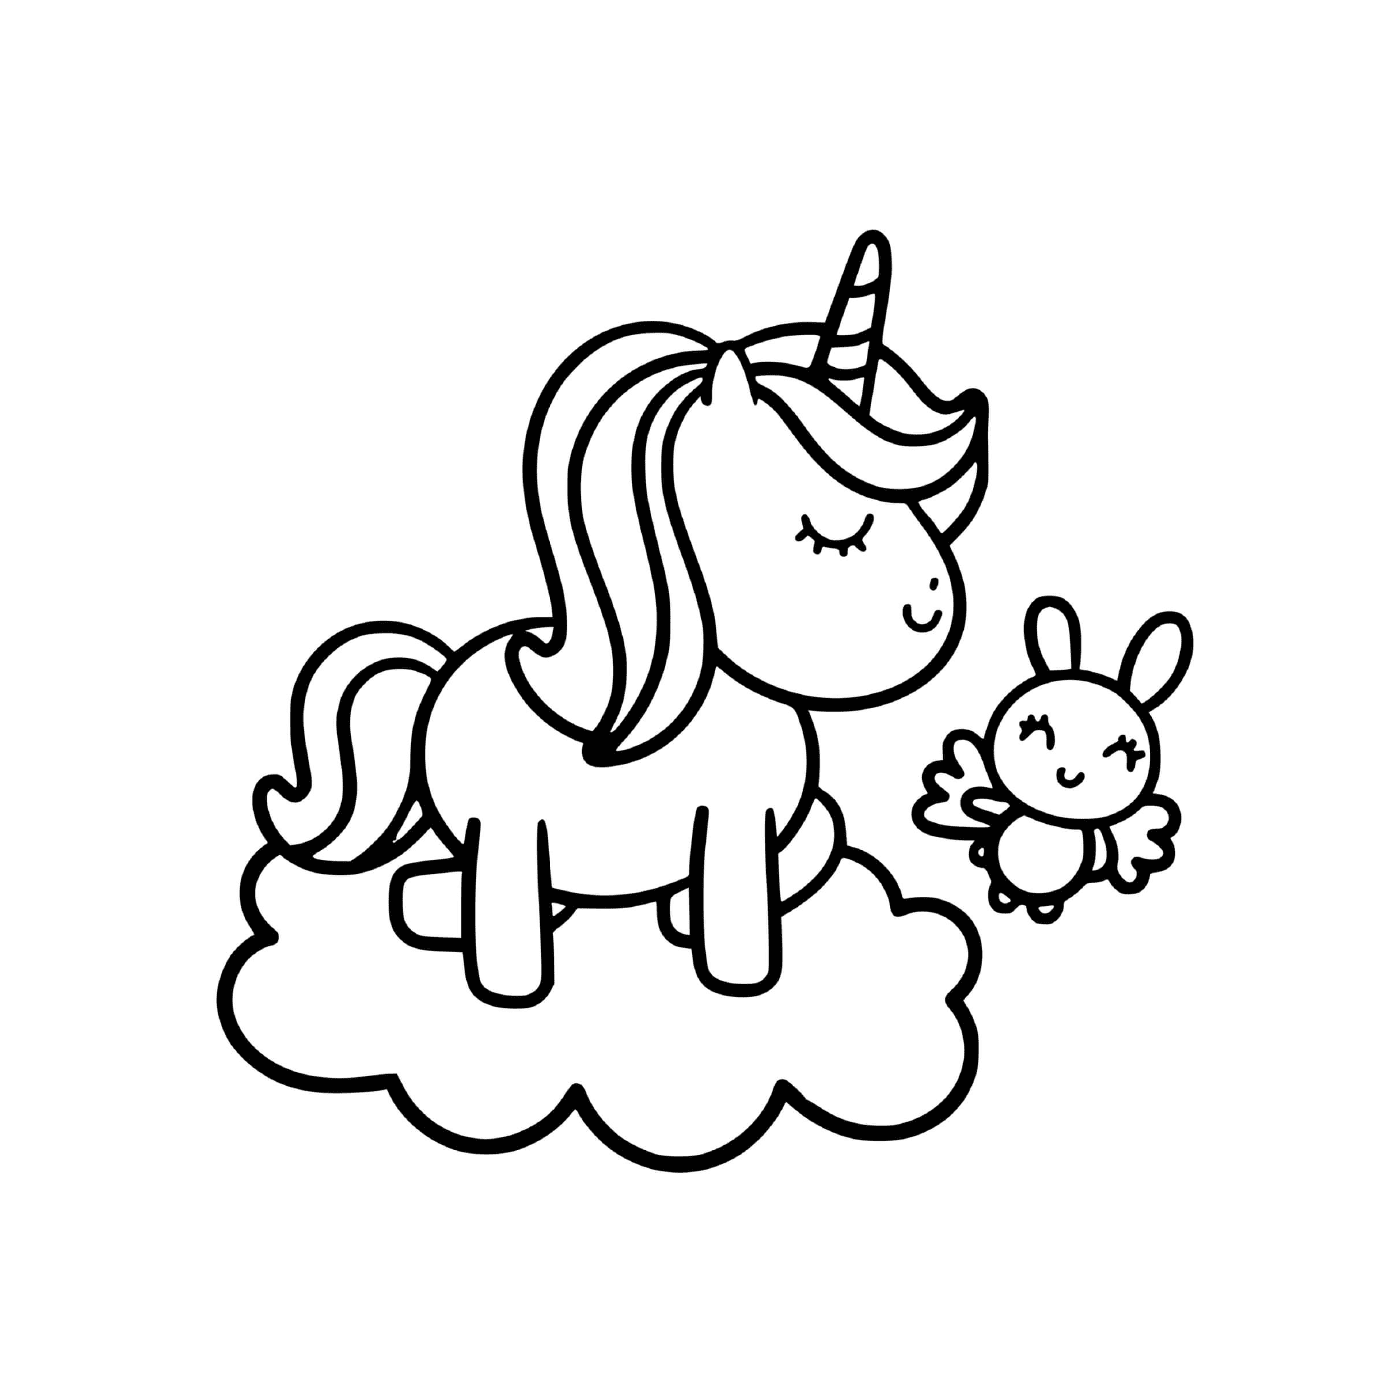  Единорог Кавай и ее ребенок на облаке 